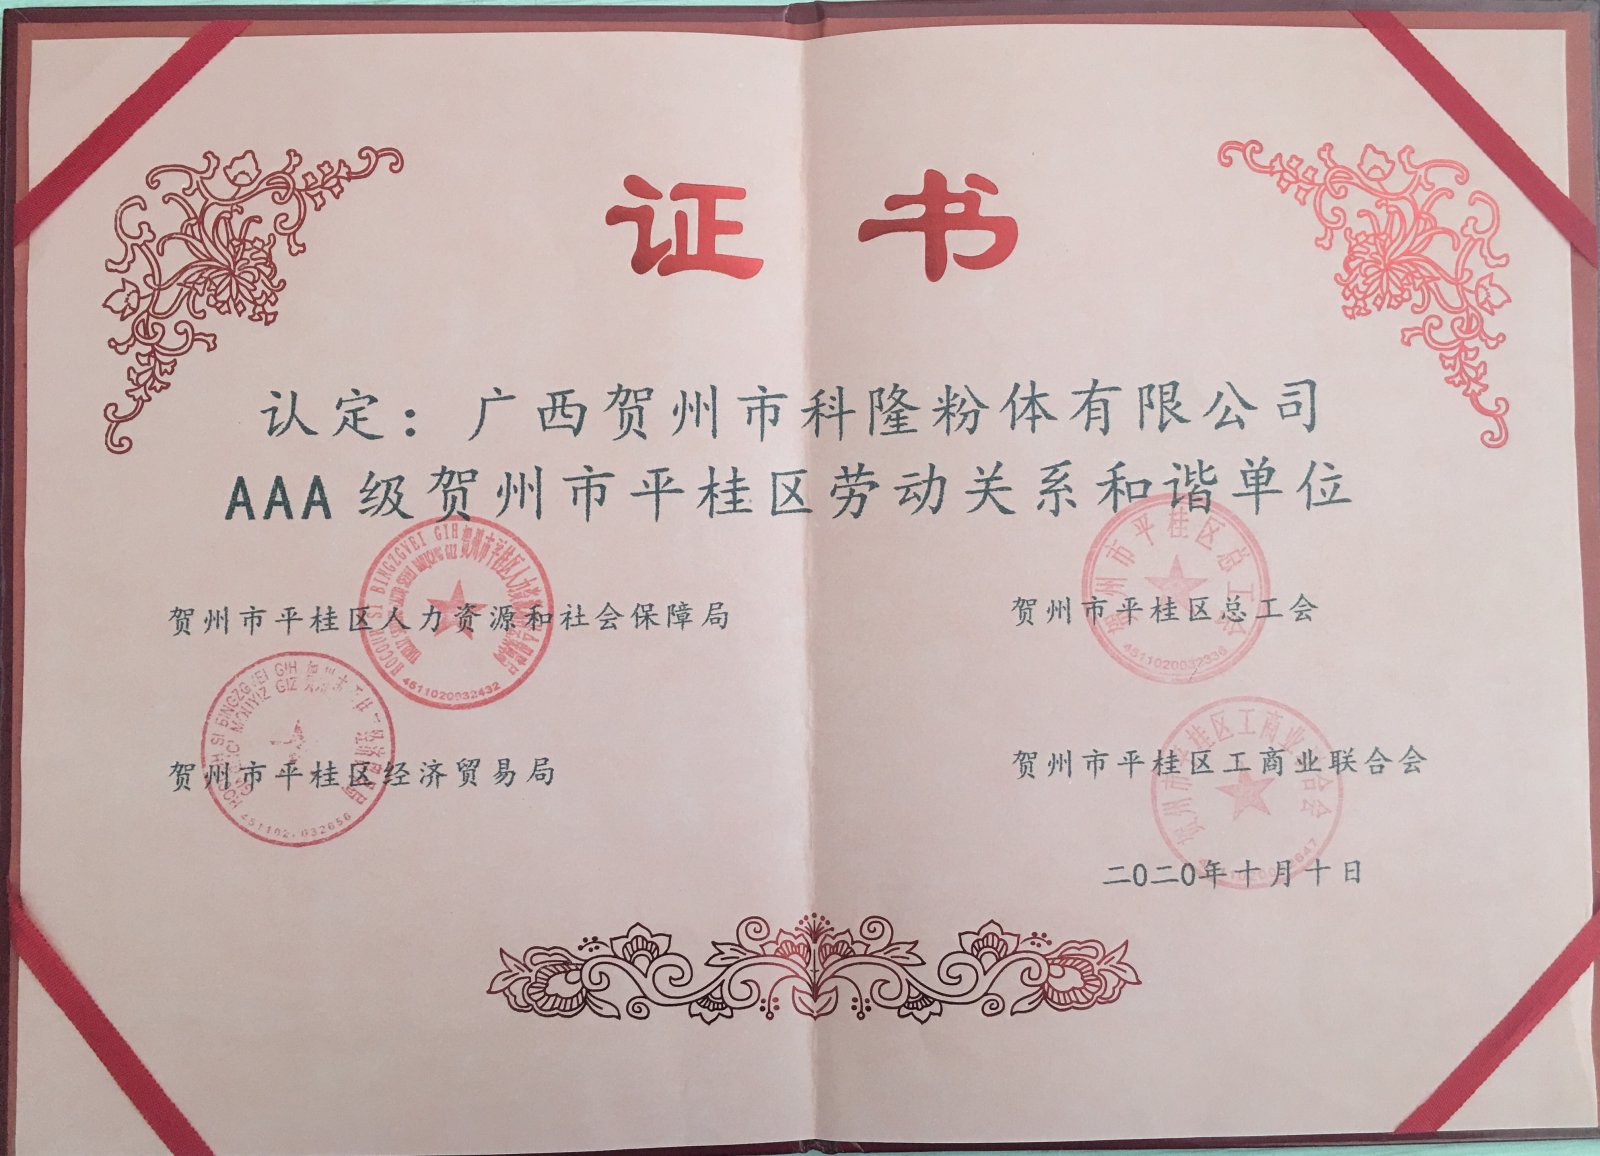 科隆粉体公司荣获贺州市平桂区“AAA级劳动关系和谐单位”称号(图2)